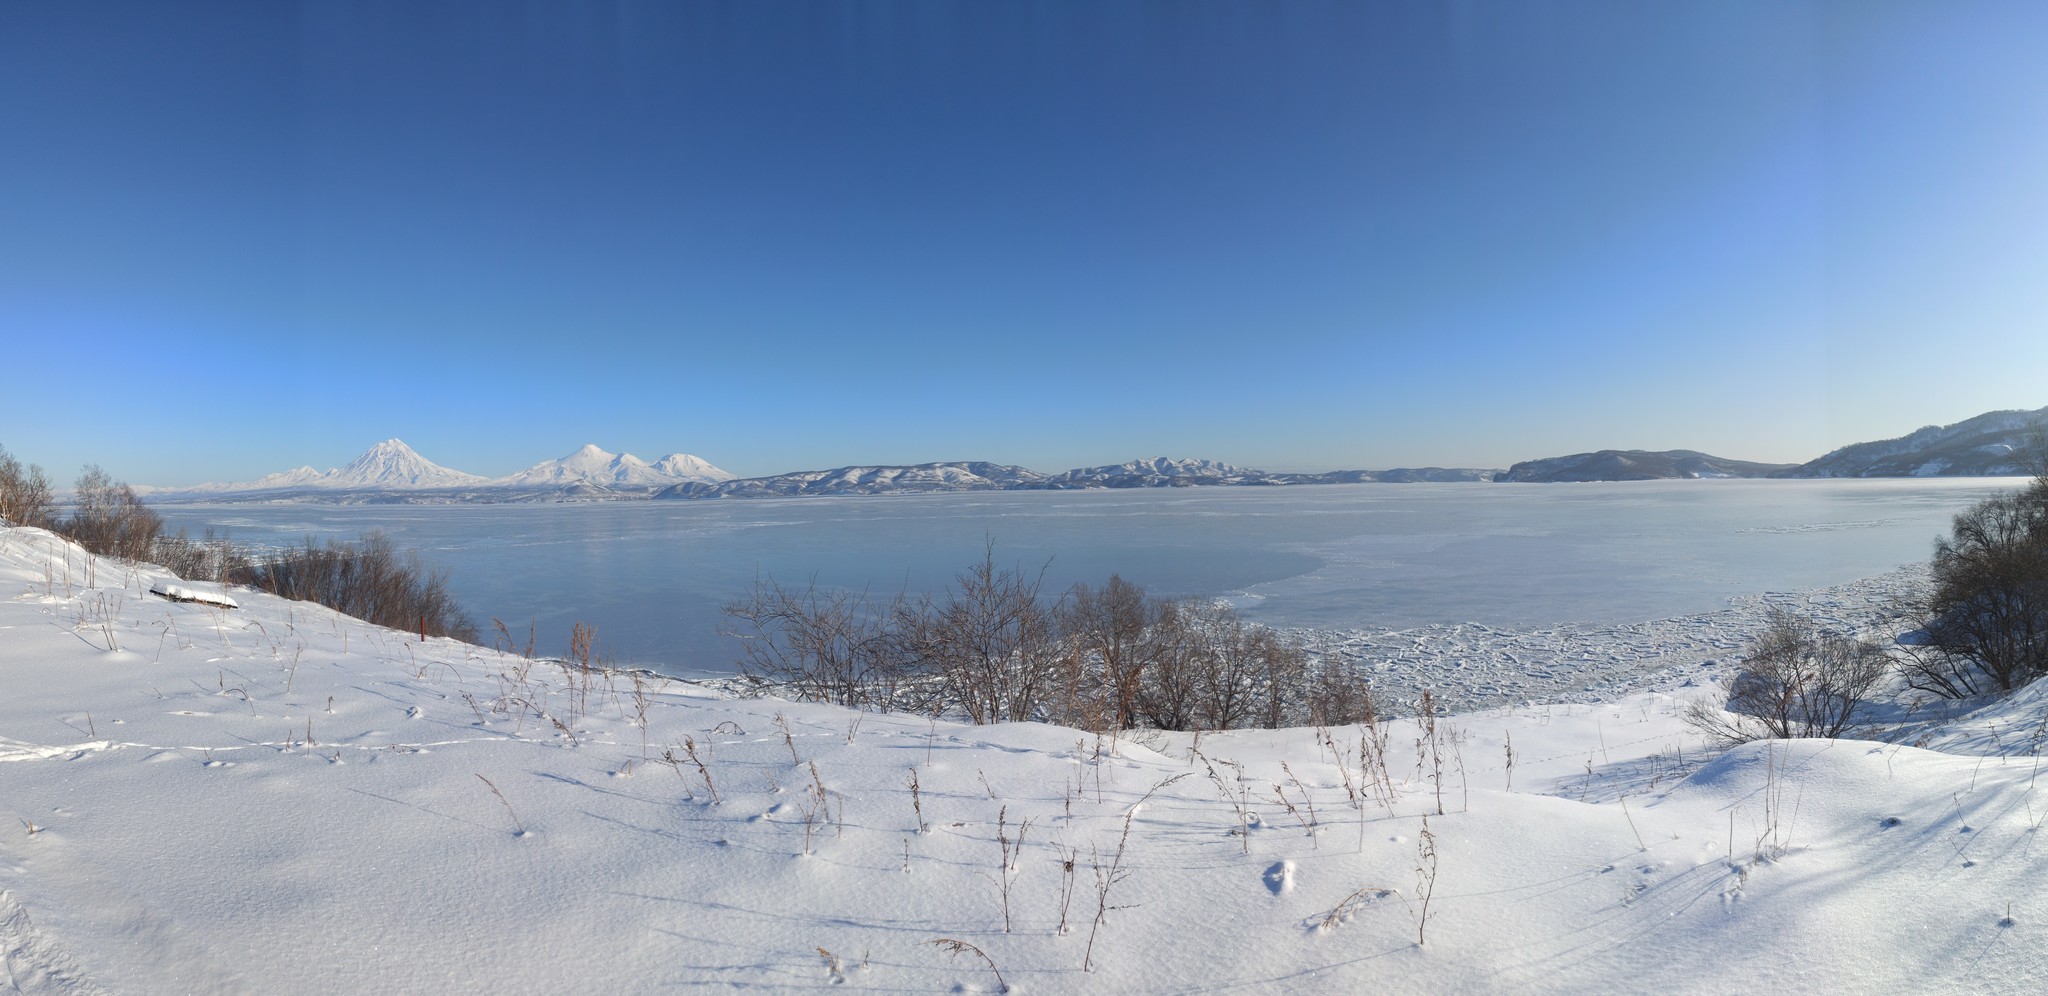 Kamchatka. Winter. View of Avacha Bay and volcanoes - My, Kamchatka, Avacha Bay, Winter, Longpost, Volcano, Volcanoes of Kamchatka